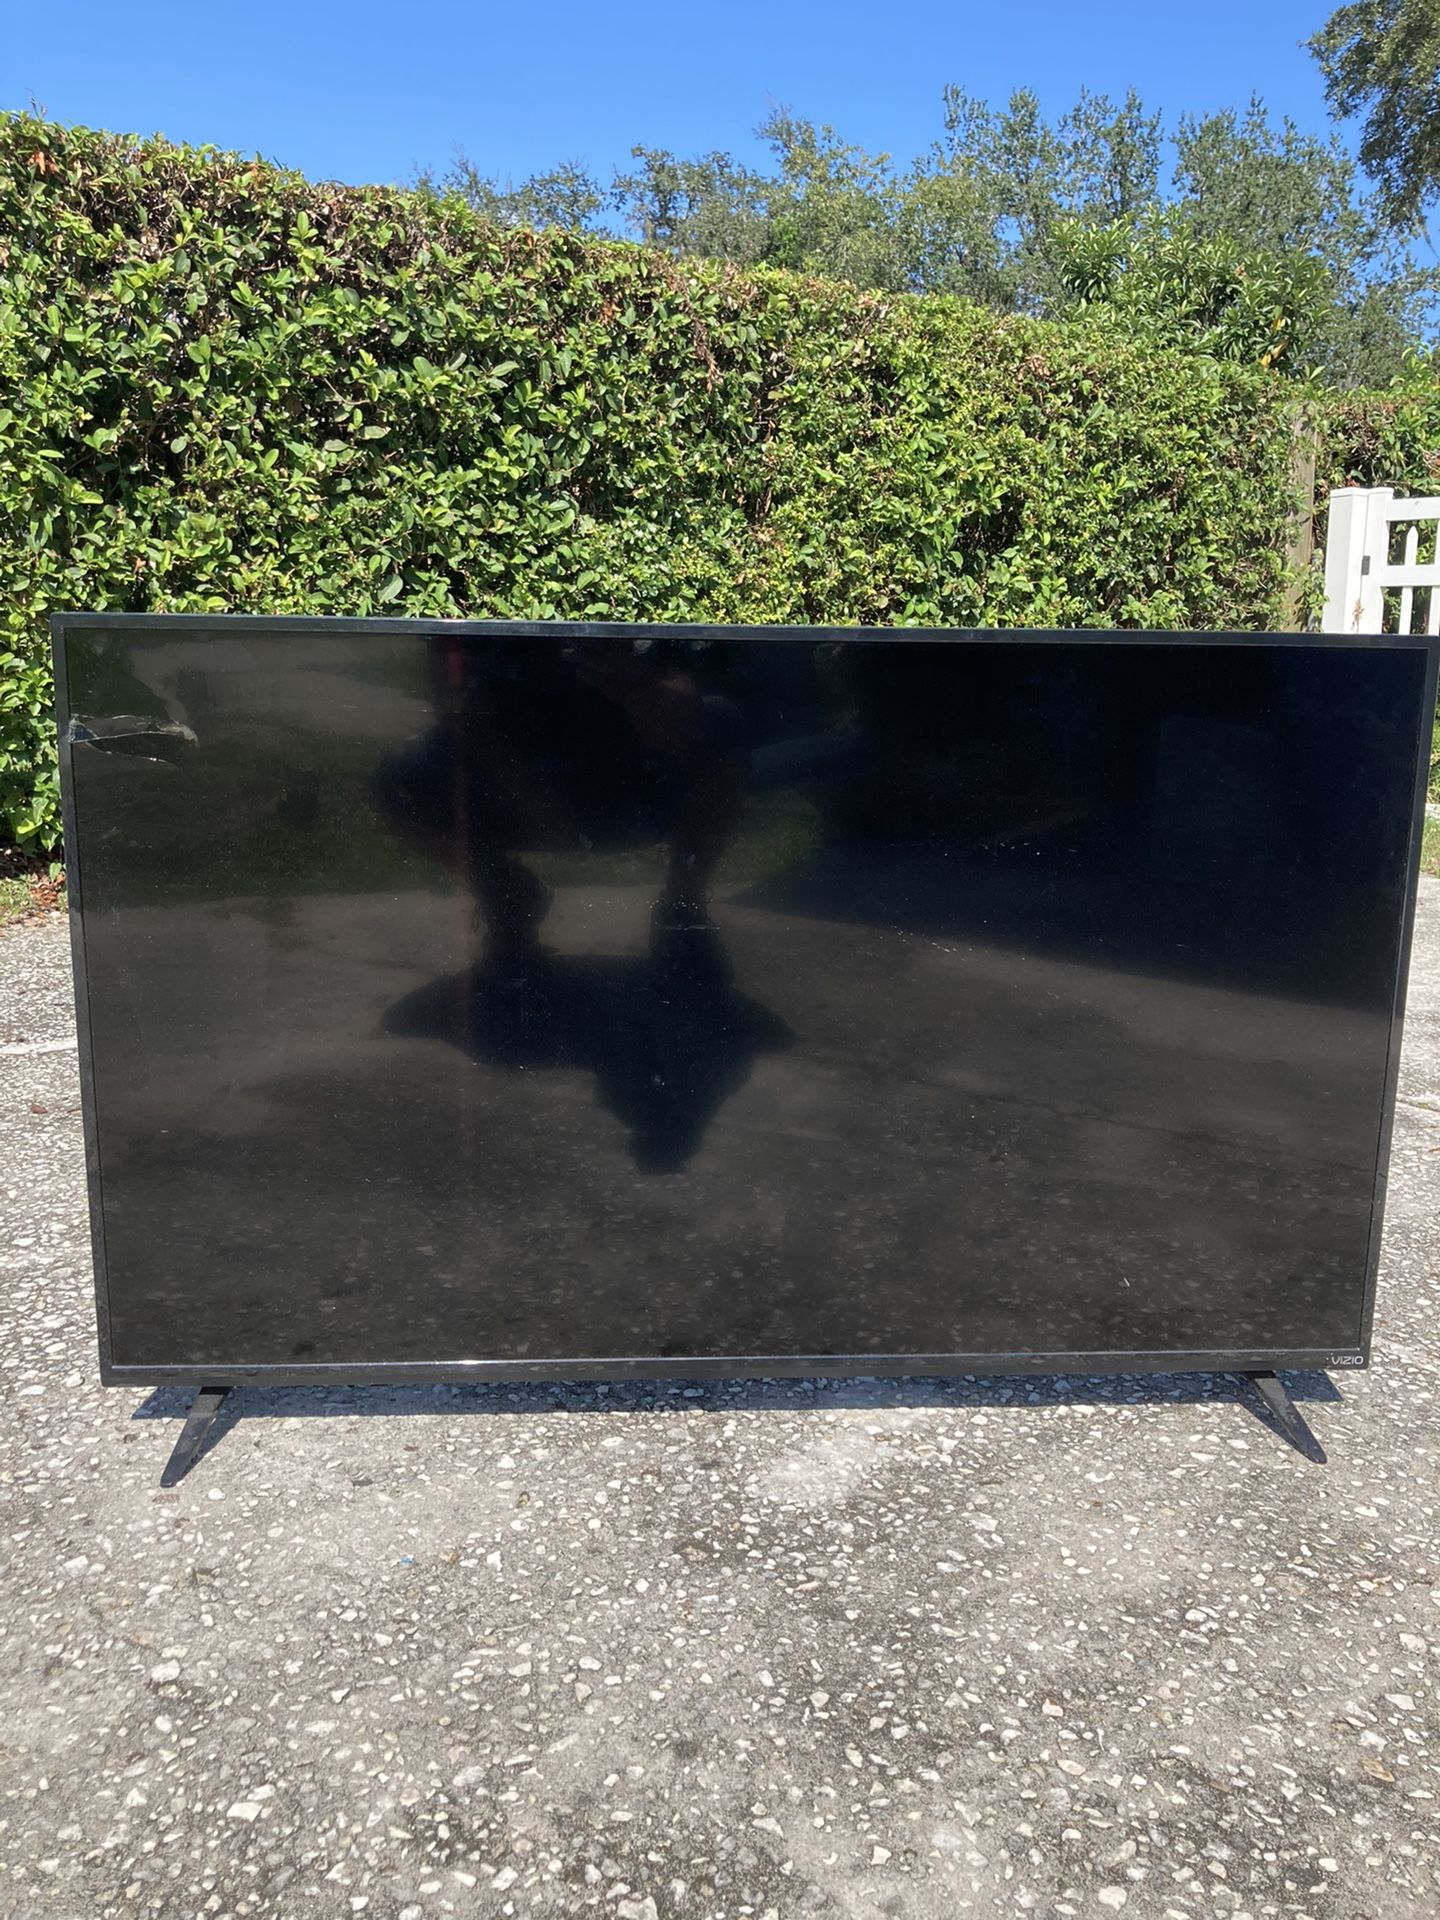 55” Vizio LCD TV.